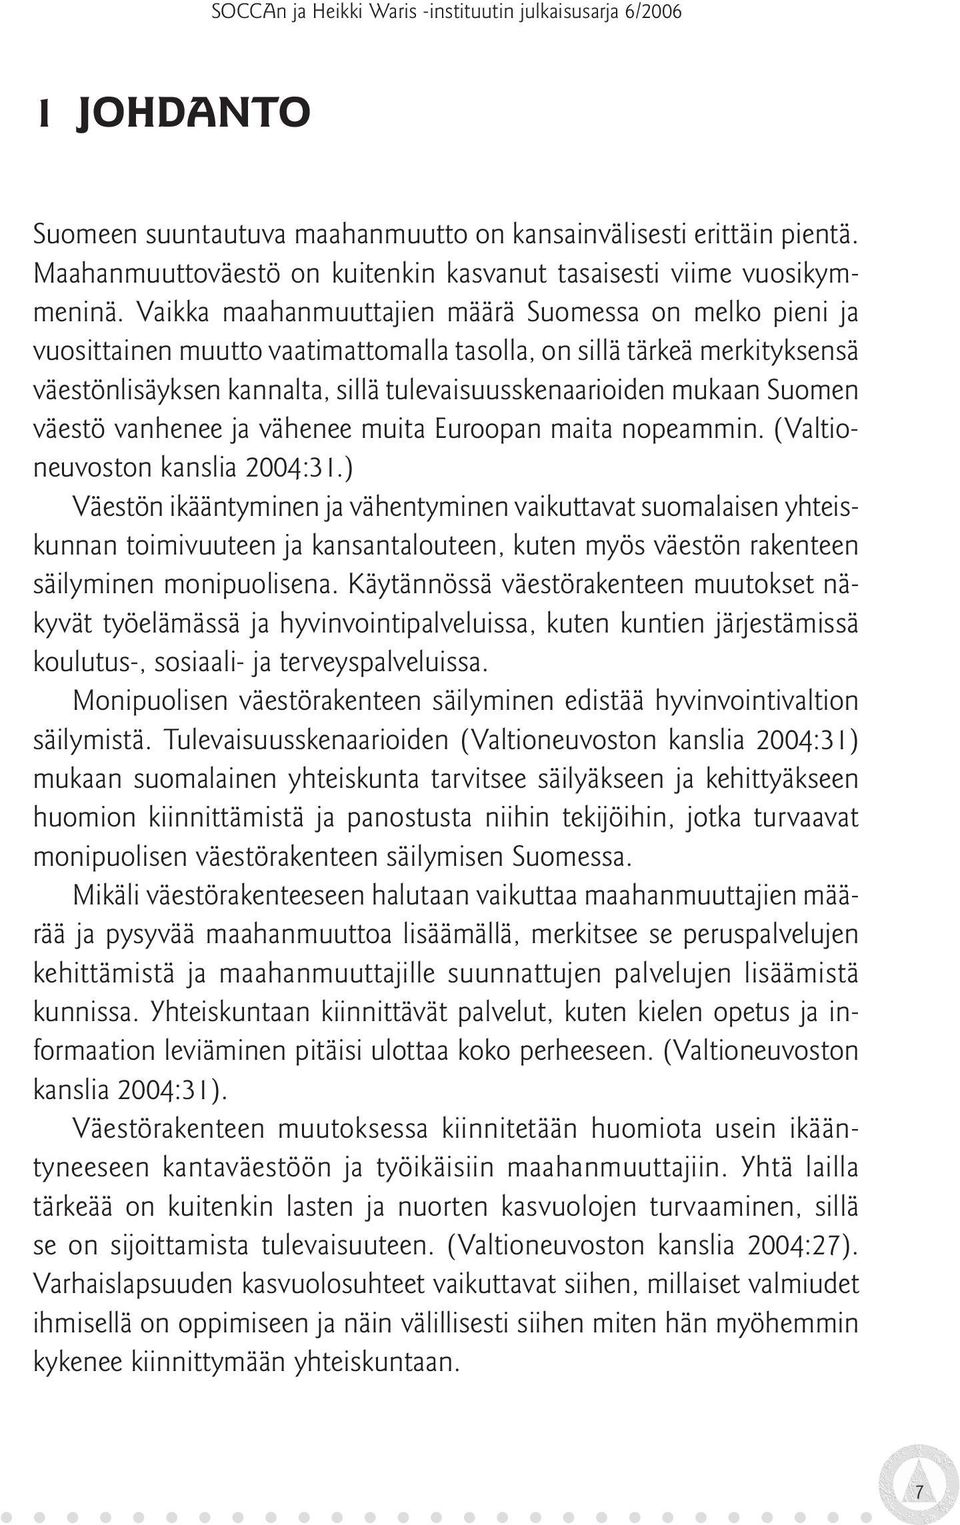 Suomen väestö vanhenee ja vähenee muita Euroopan maita nopeammin. (Valtioneuvoston kanslia 2004:31.